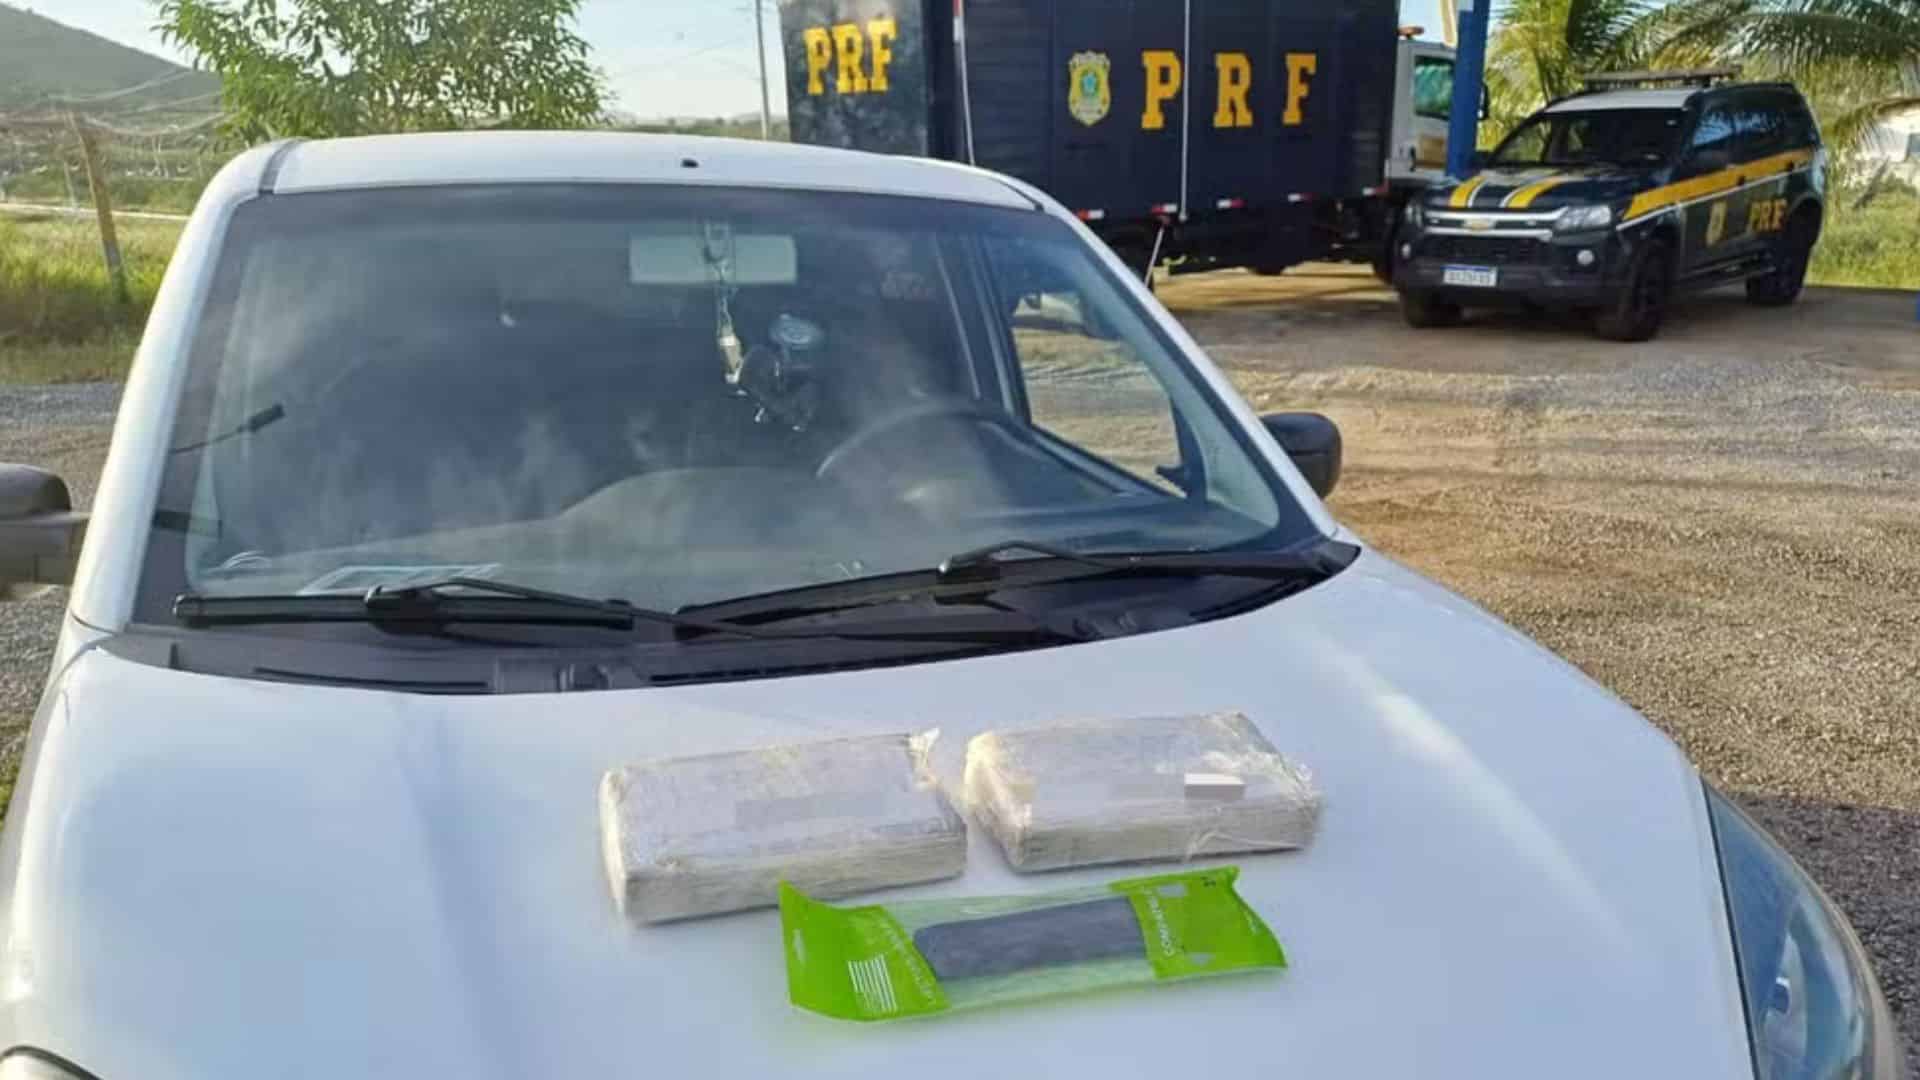 PERNAMBUCO: PRF encontra 2,2 KG de COCAÍNA e carregador de PISTOLA em carro; homem foi PRESO